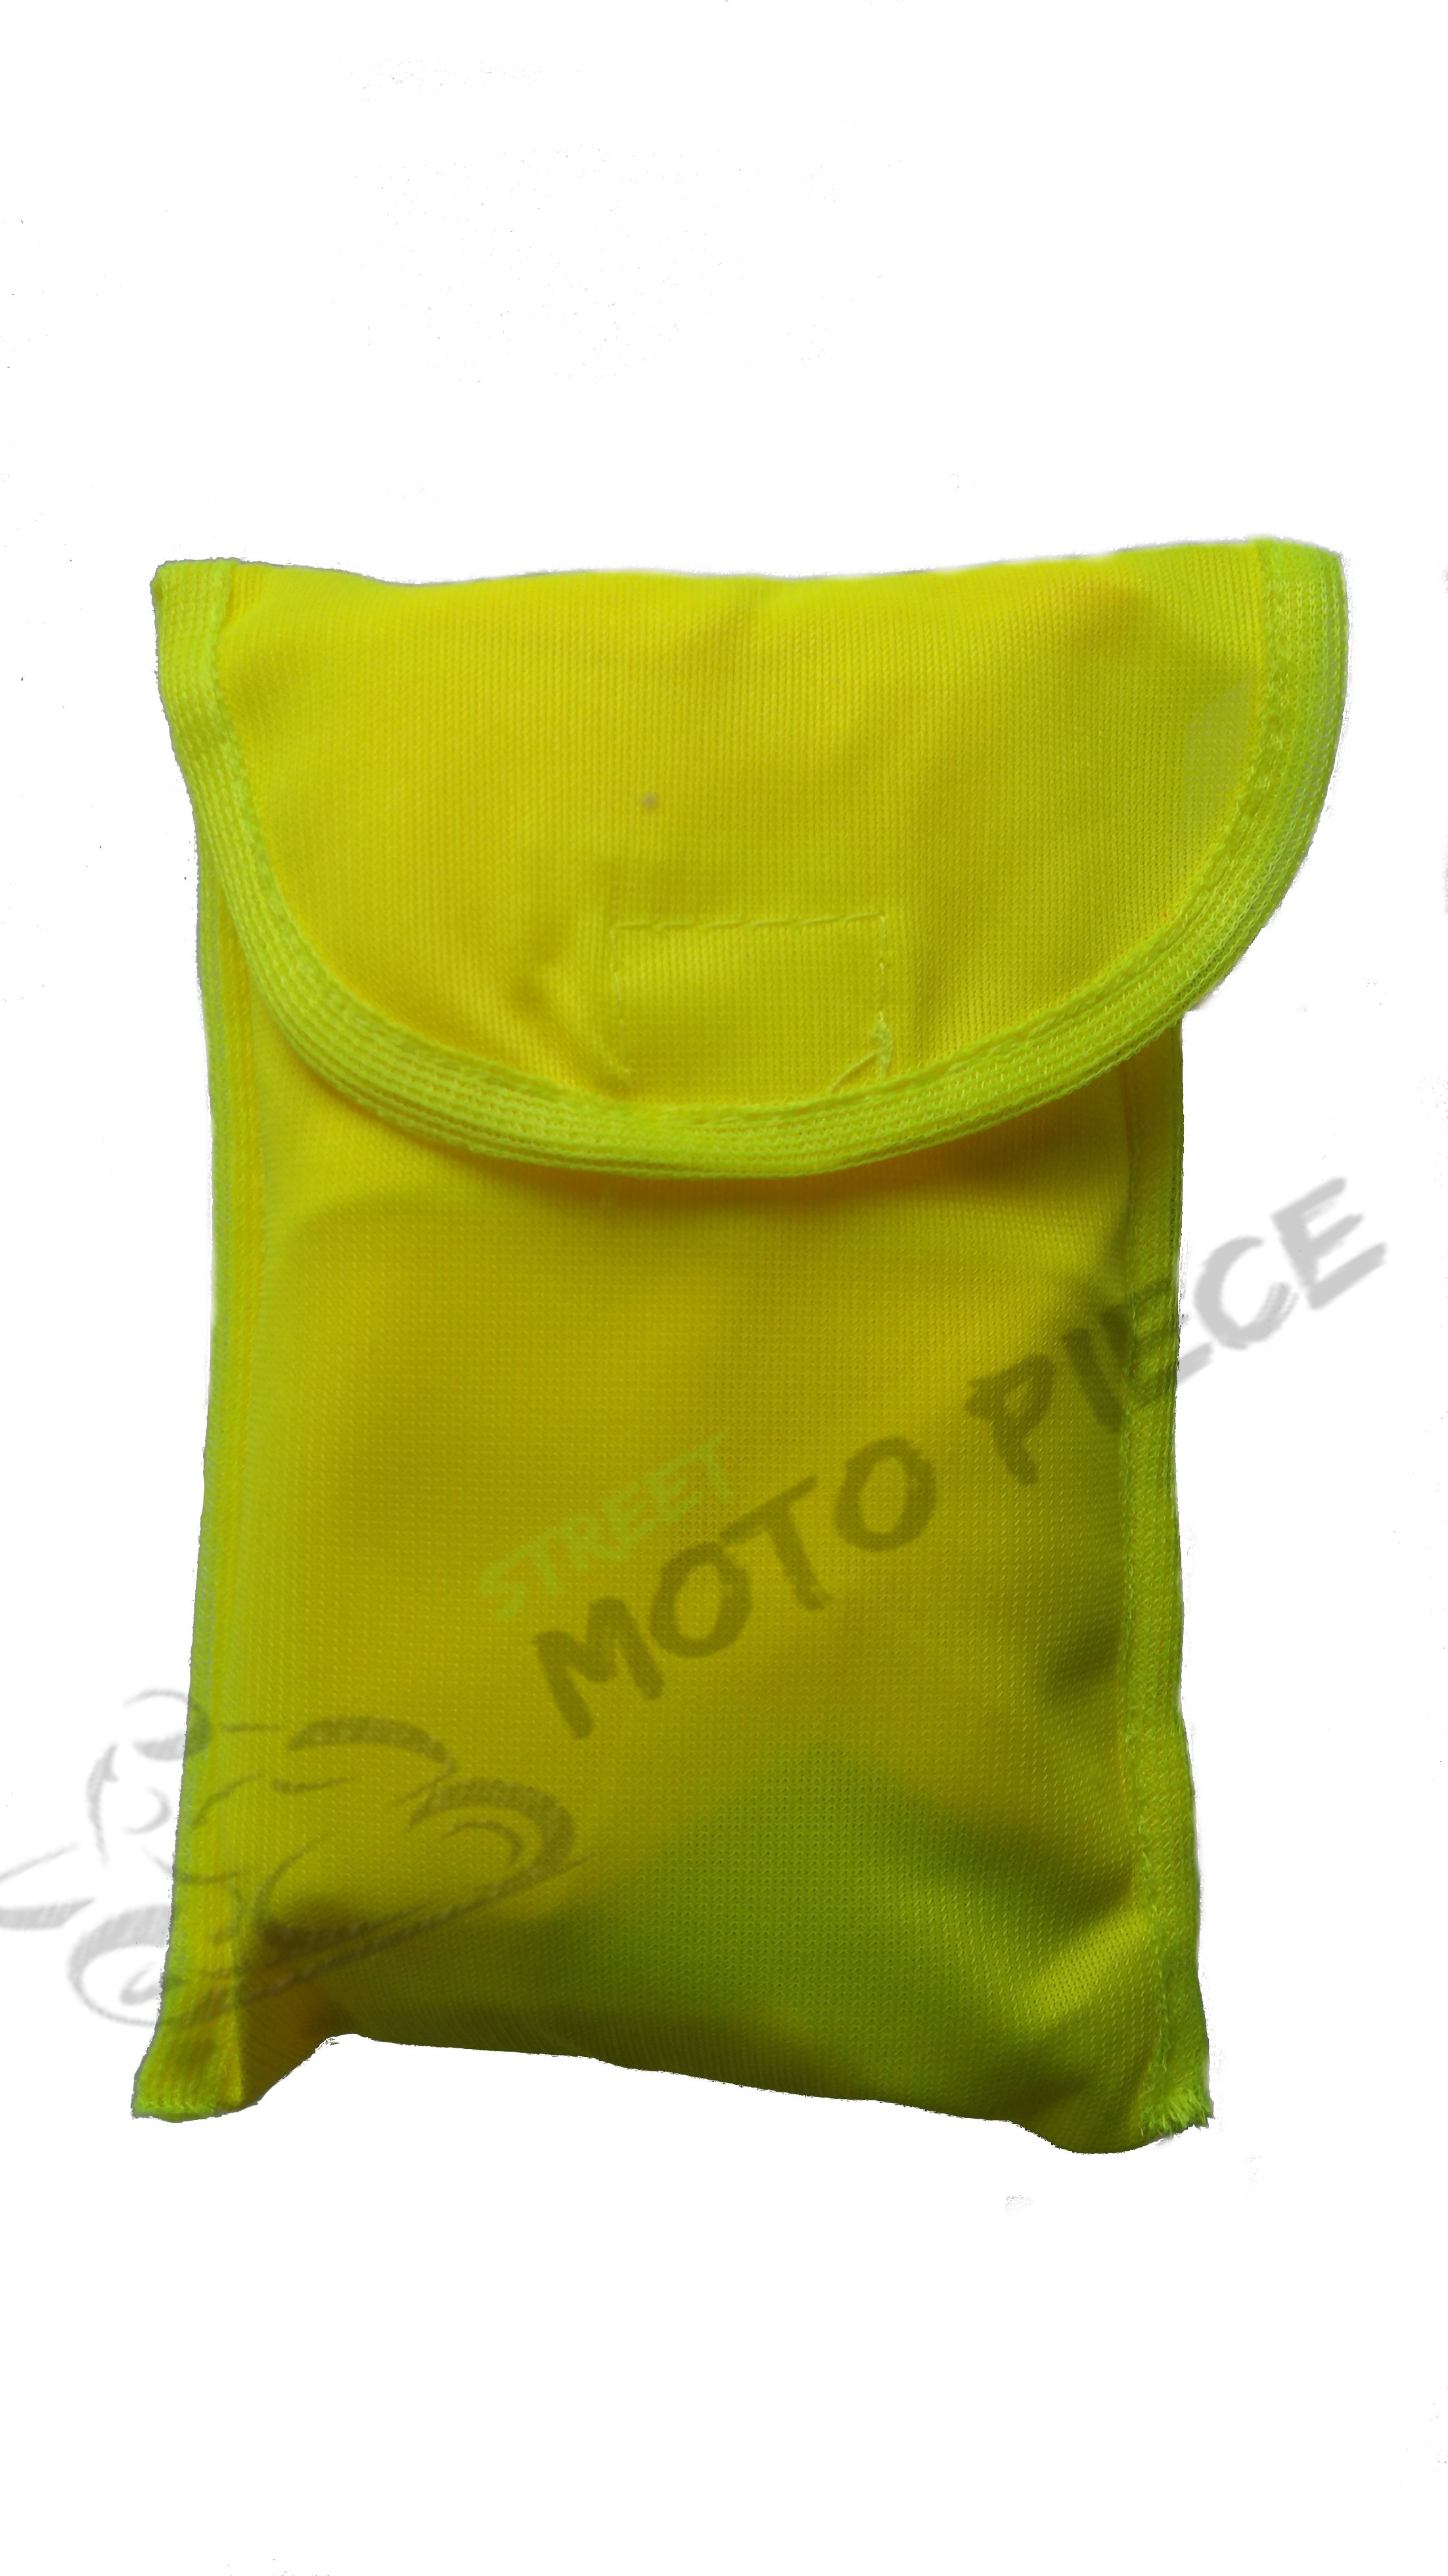 Gilet moto de sécurité réfléchissant jaune, Norme CE